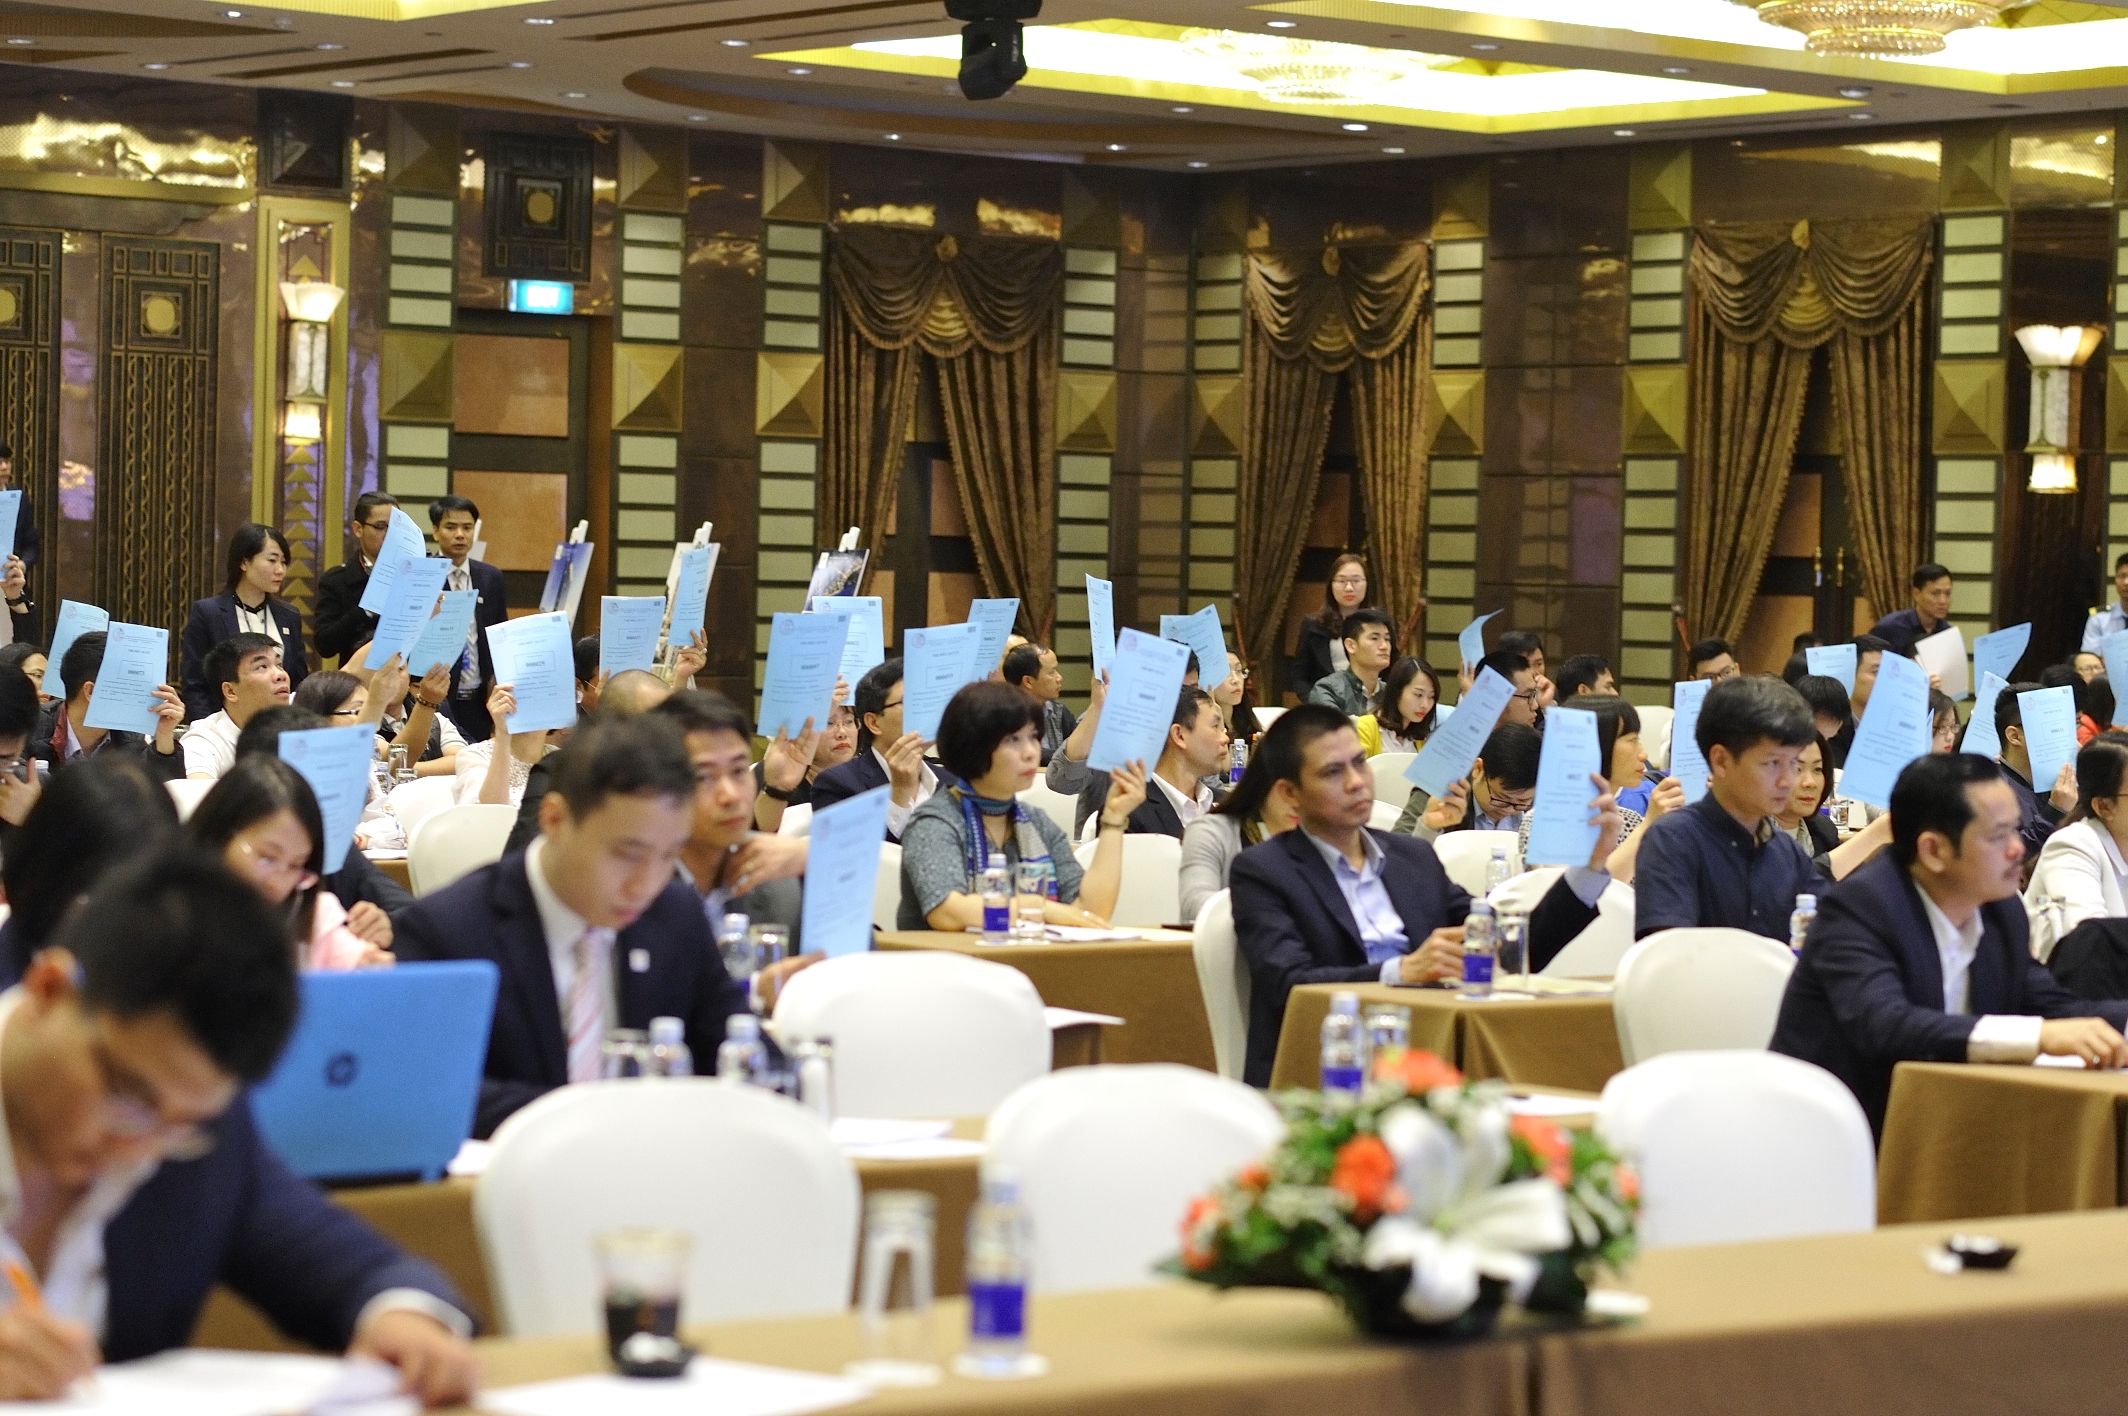 Văn Phú – Invest đẩy mạnh triển khai hàng loạt dự án, đặt kế hoạch lãi sau thuế 510 tỷ đồng trong năm 2019